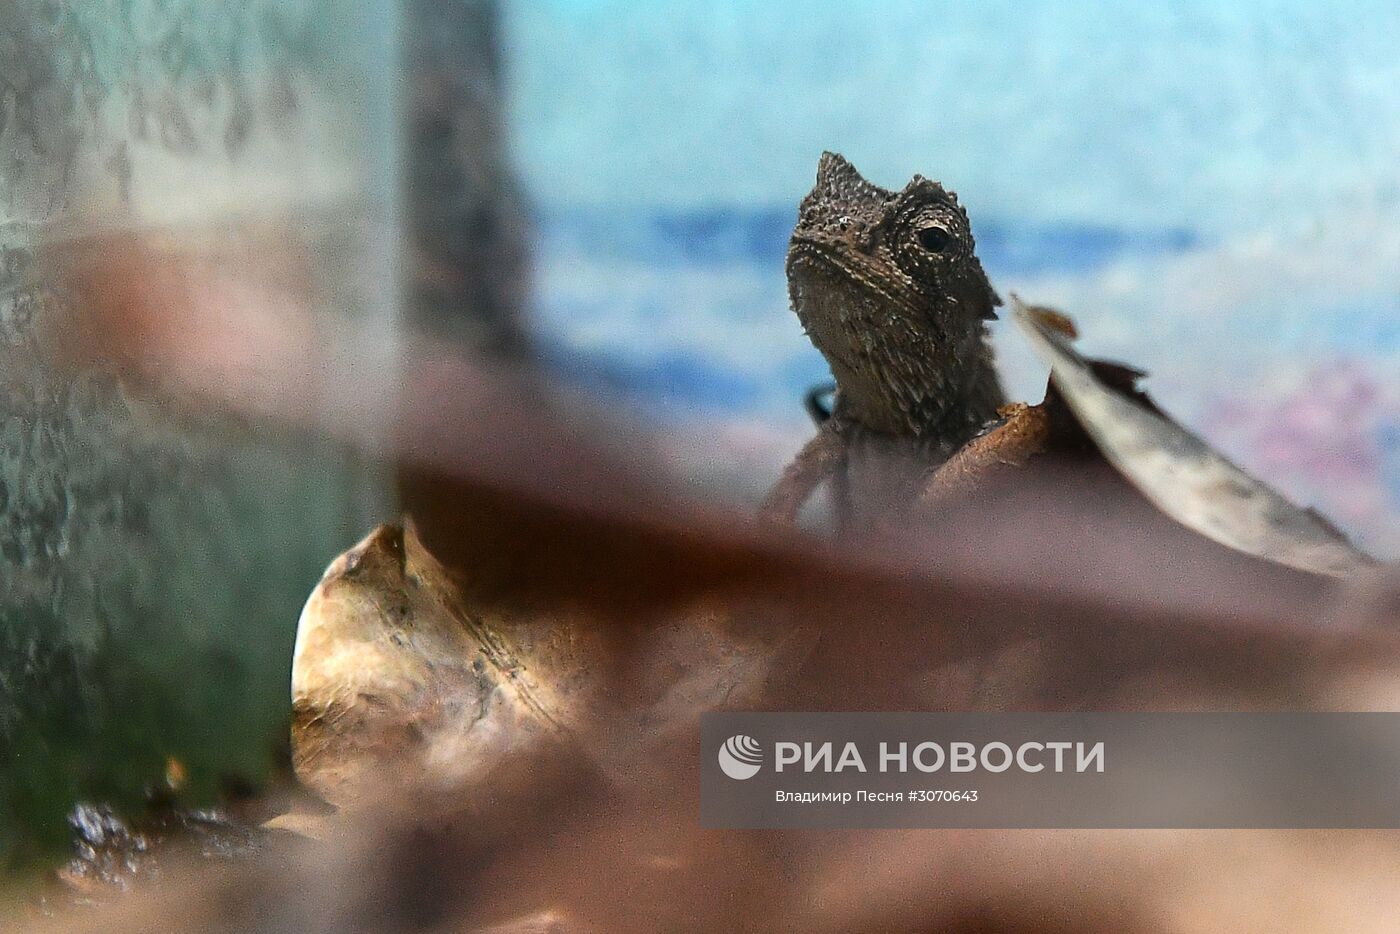 Редкие рептилии в Московском зоопарке